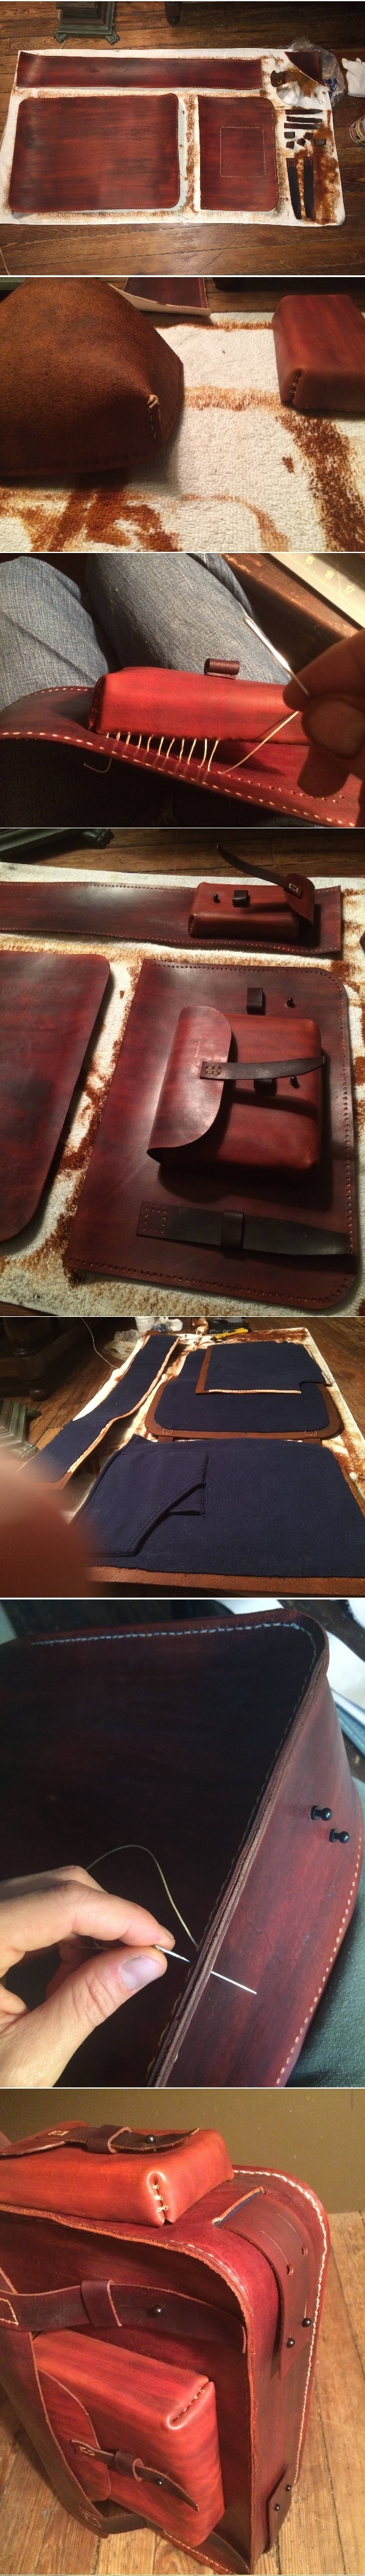 Процесс создания кожаной сумки своими руками (6 фото)